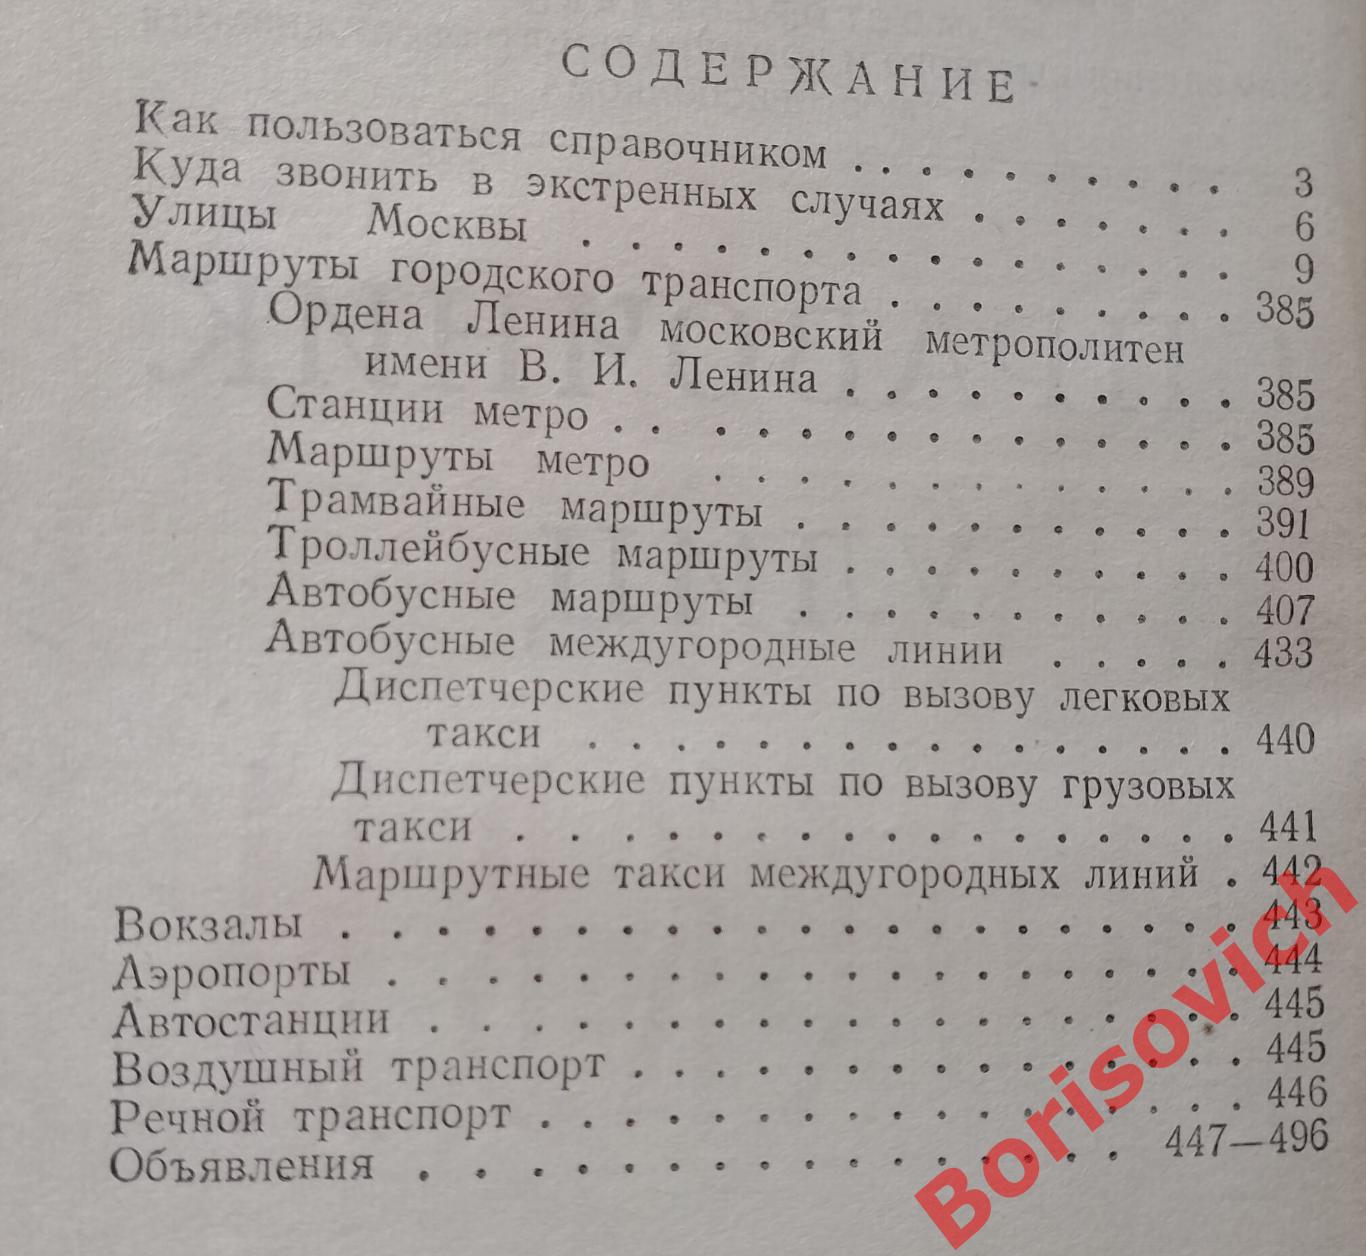 Справочник улиц МОСКВЫ 1959 г496 страниц 2